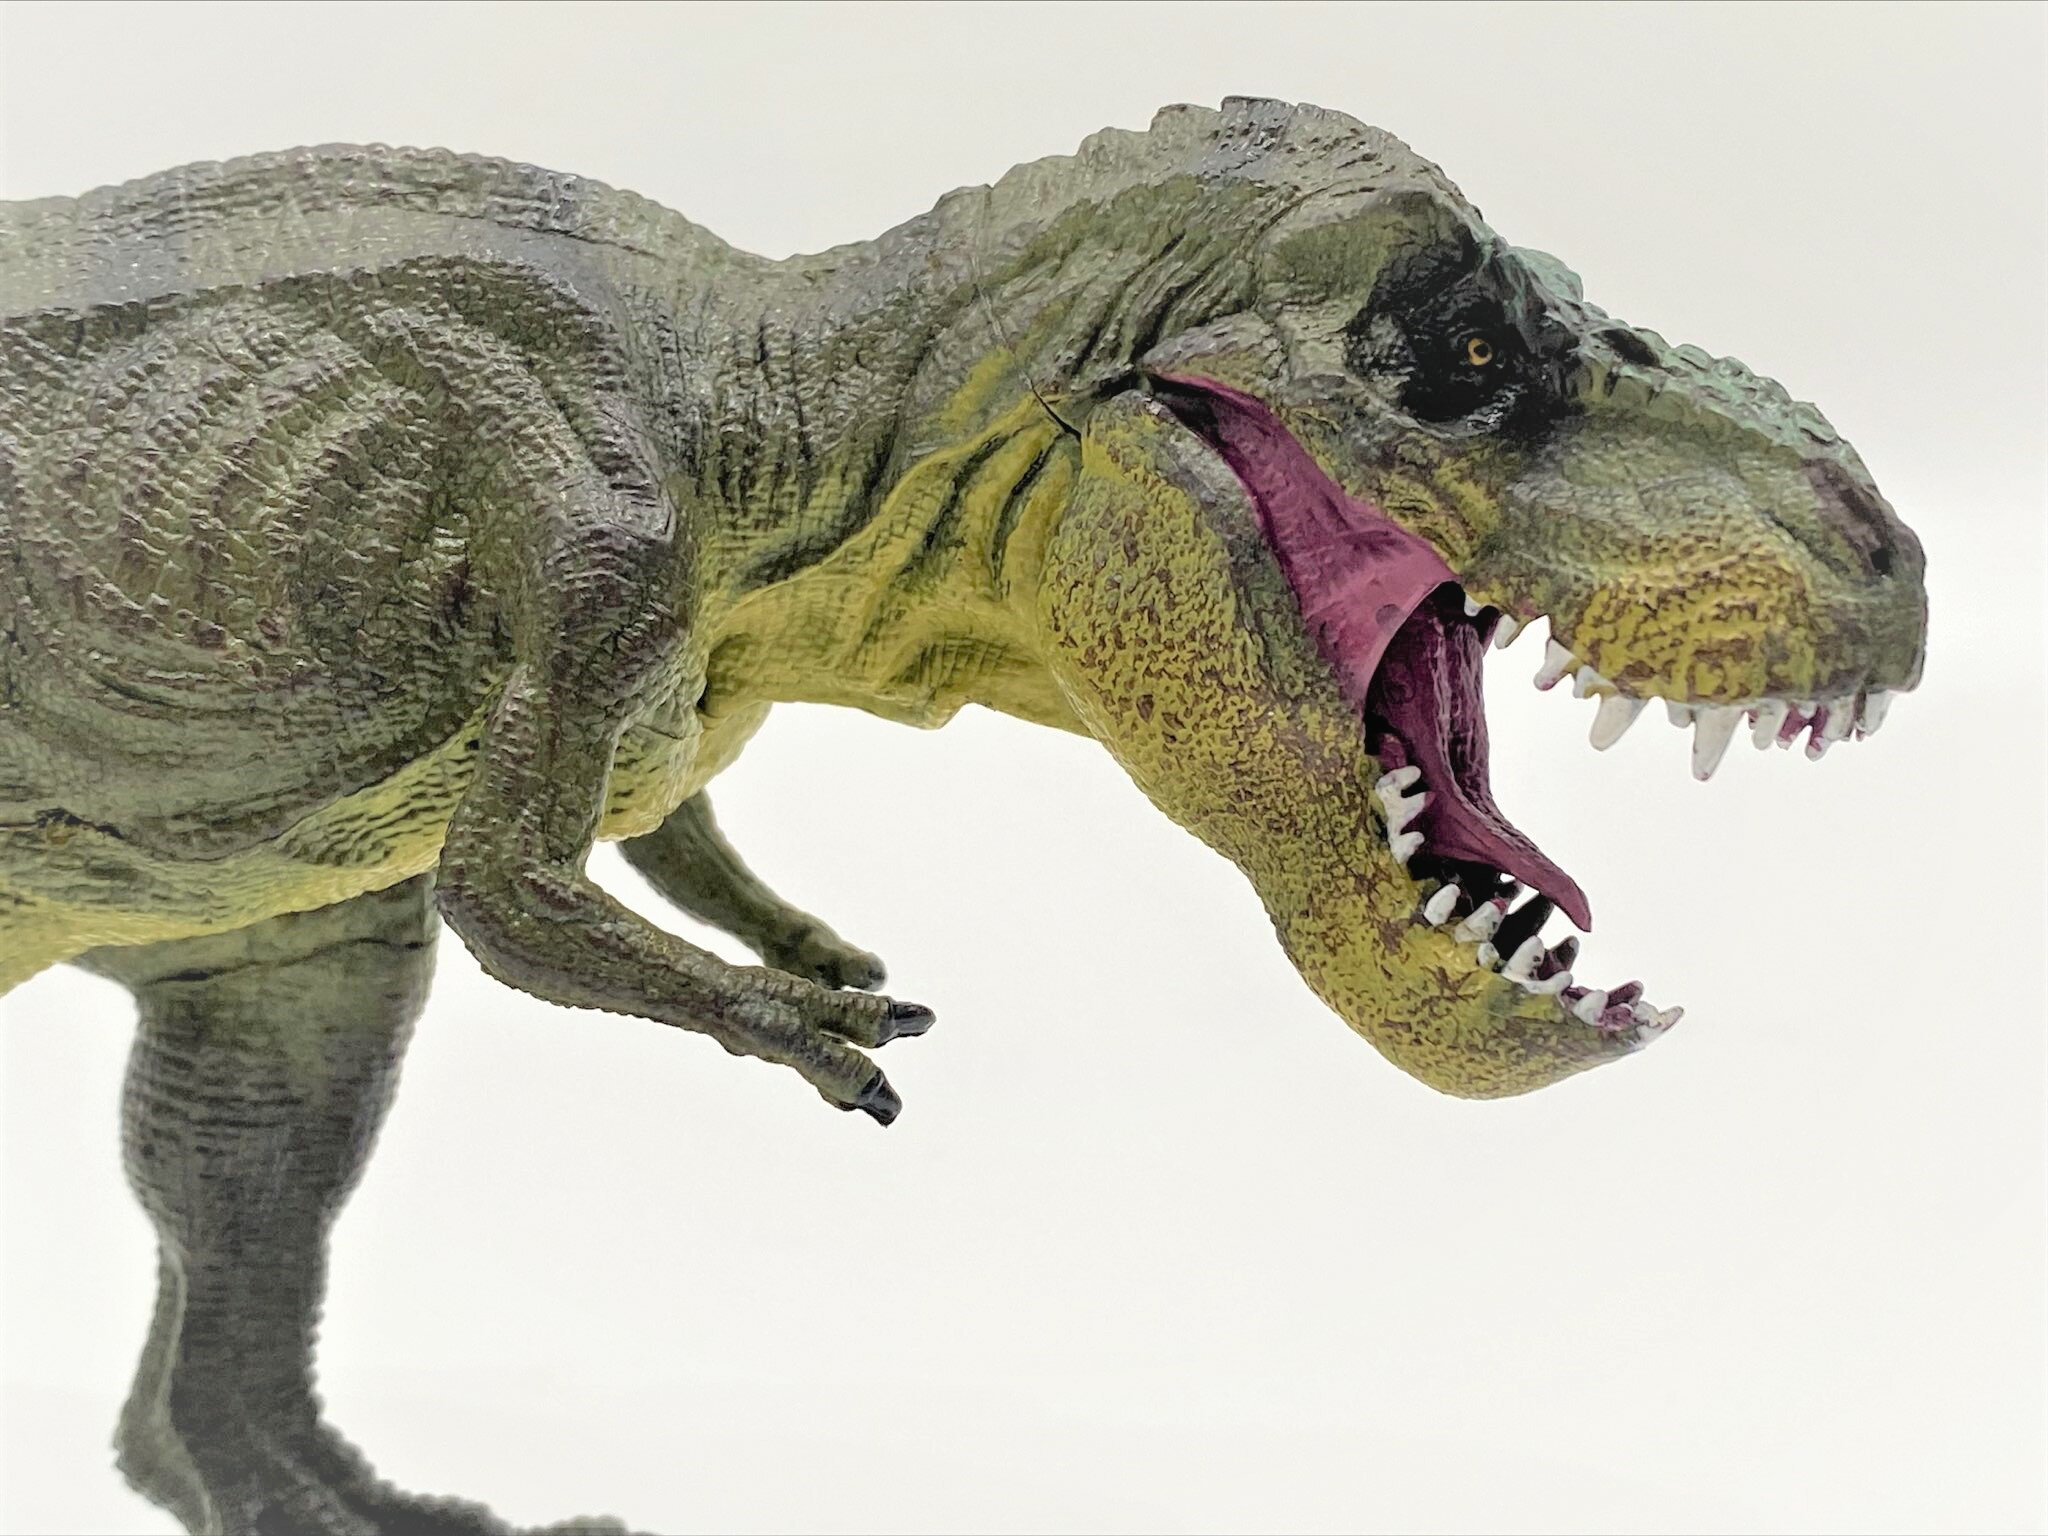 【送料無料】恐竜 ティラノサウルス リアルフィギュア ダイナソー 迫力 観賞用 おもちゃ コレクション 2カラー グリーン ブラウン クリスマス プレゼント 誕生日 記念日 贈り物 バースデー ギフト 特別な日 ご褒美 お祝い dinoストア df004